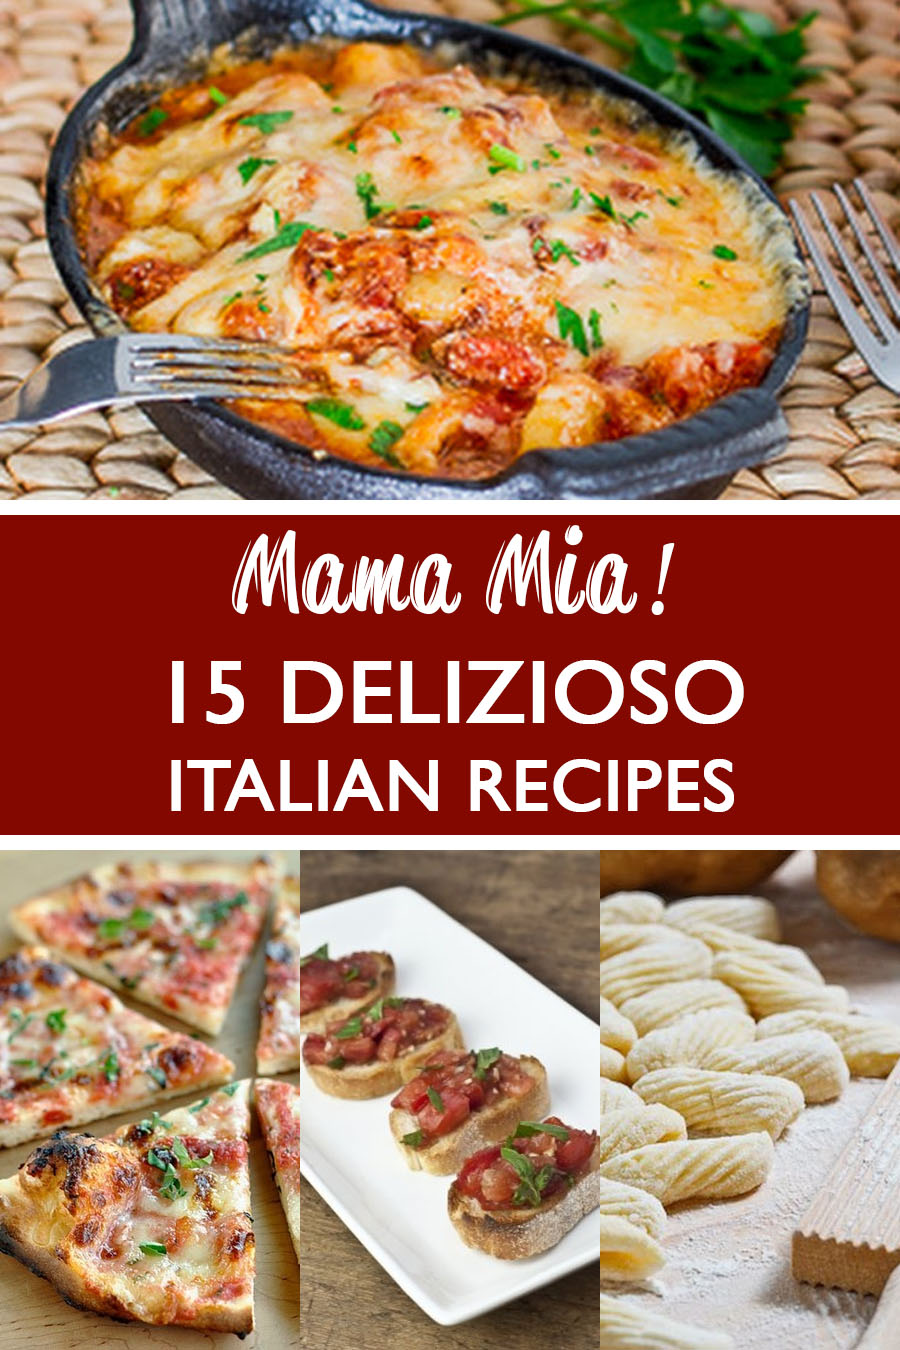 Mama Mia! 15 Delizioso Italian Recipes